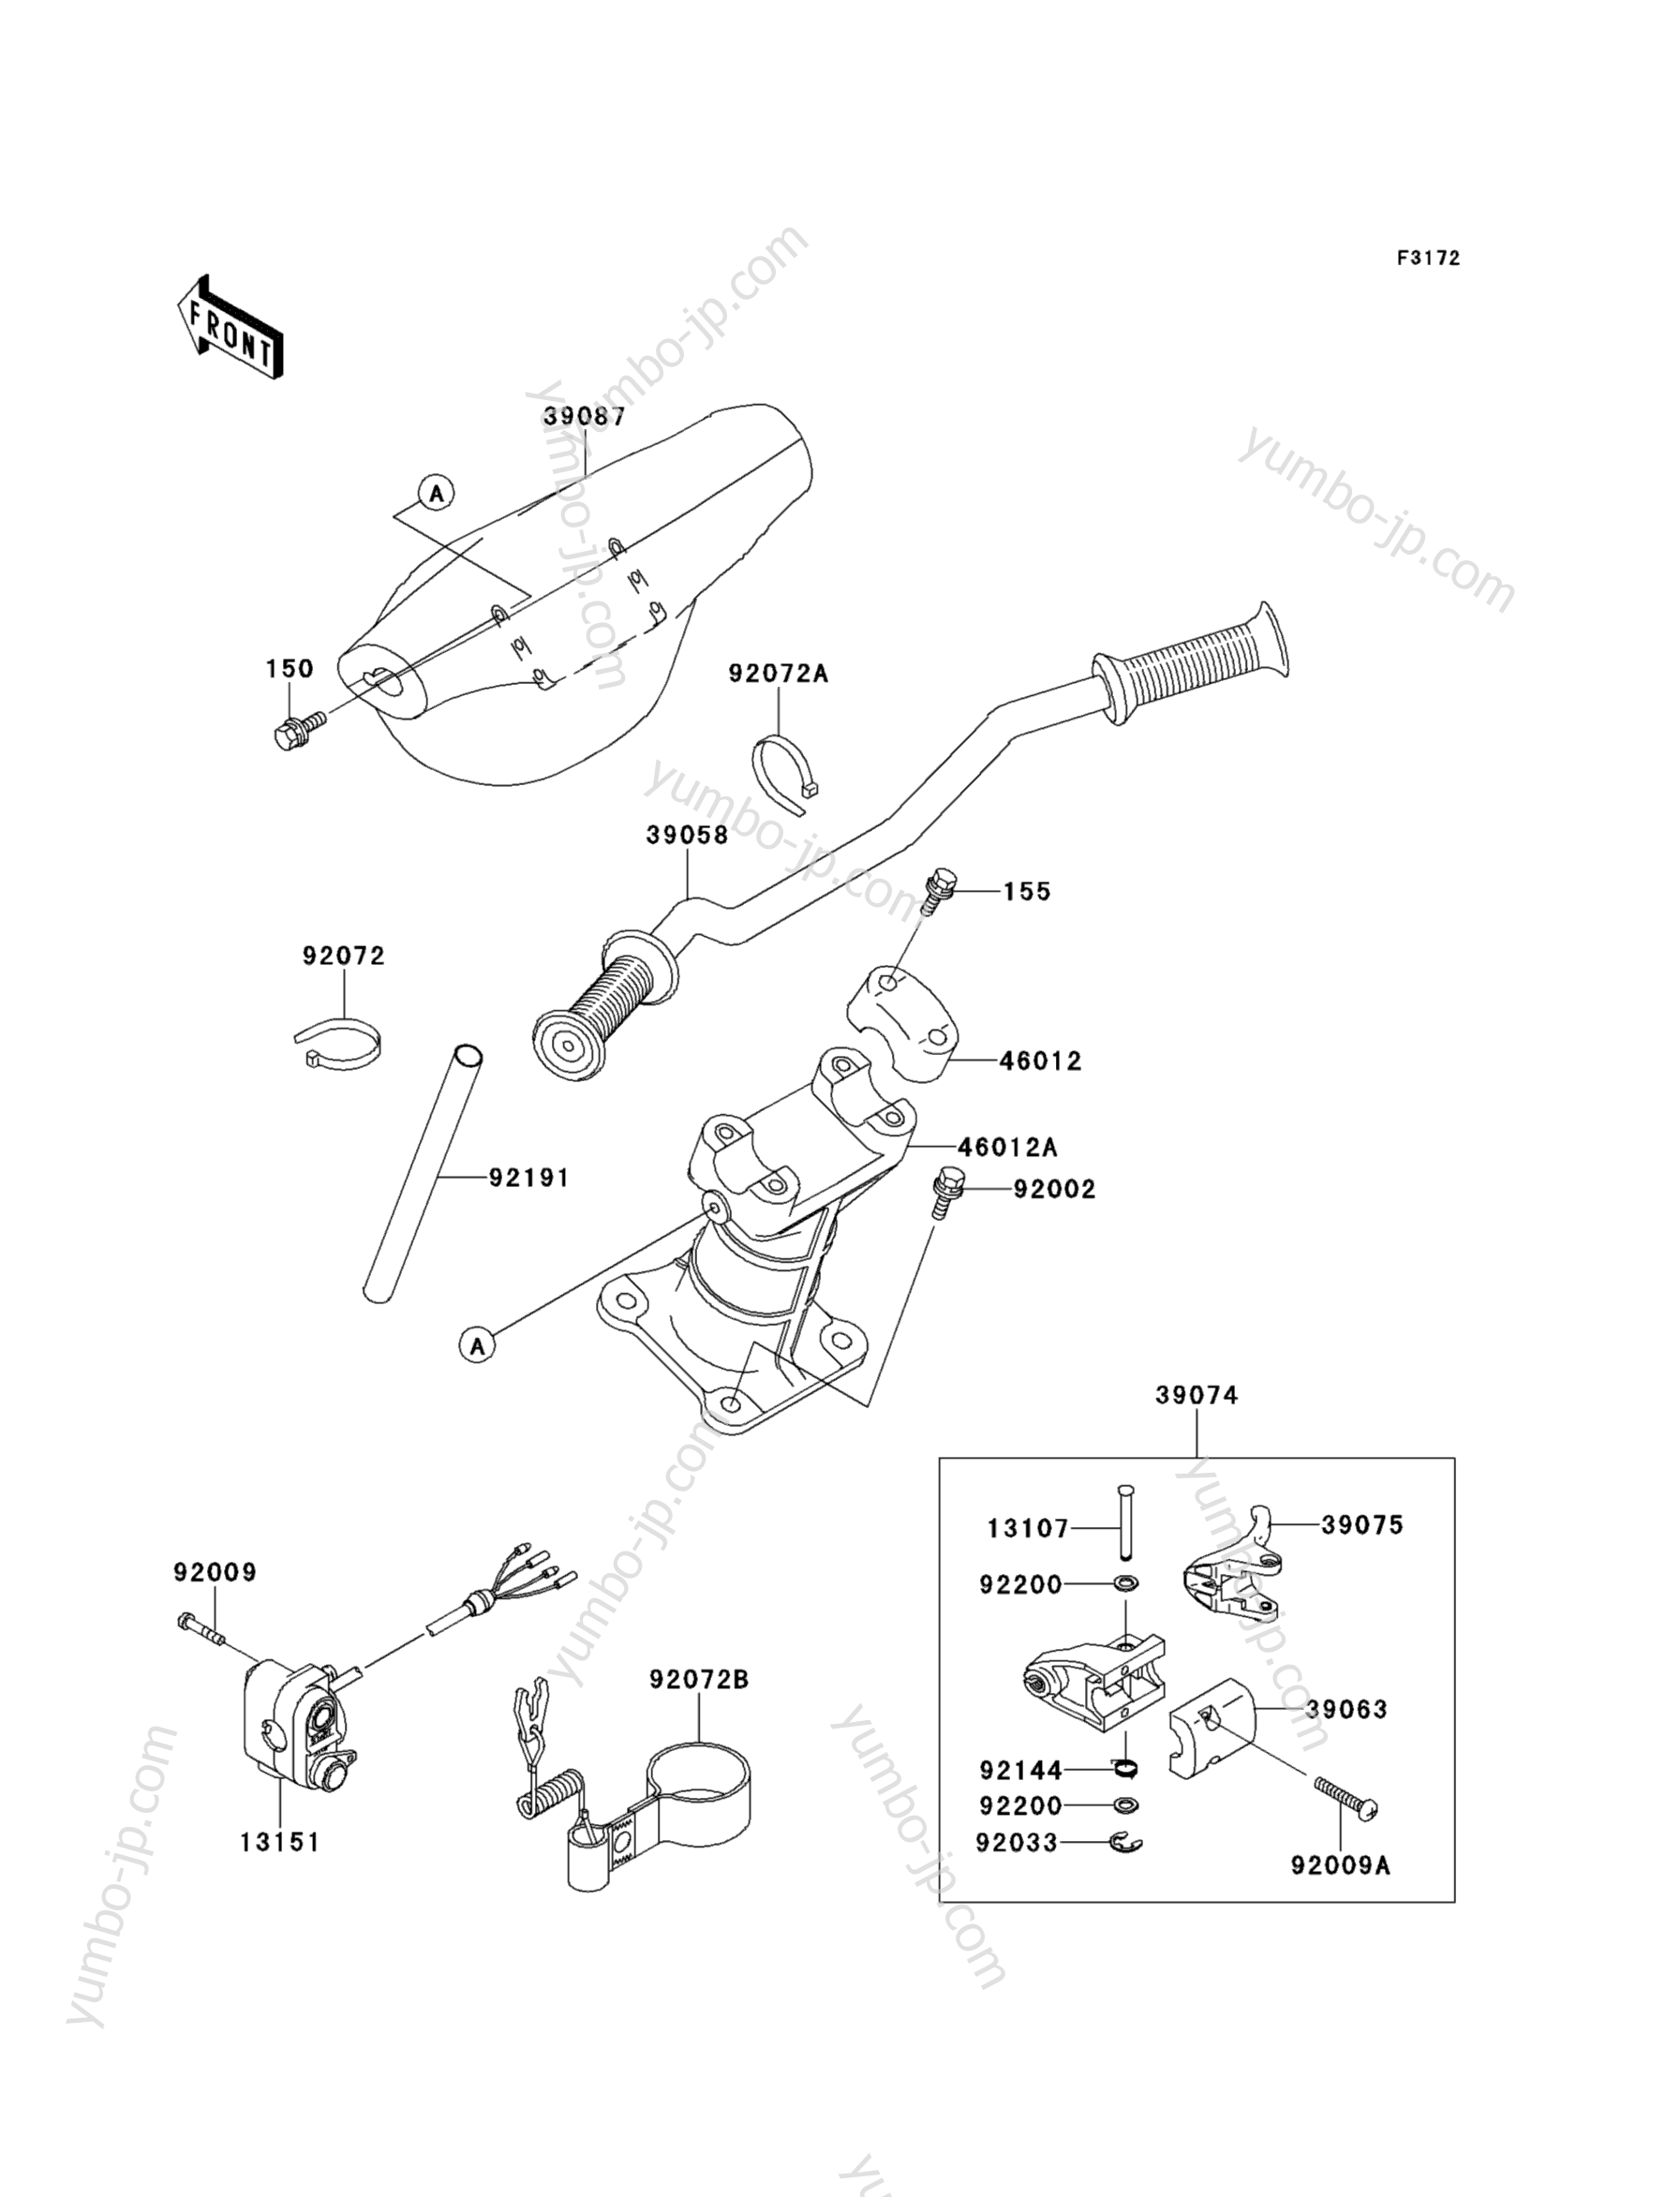 Румпель (рукоятка управления) для гидроциклов KAWASAKI JET SKI 1100 STX (JT1100-A1) 1997 г.